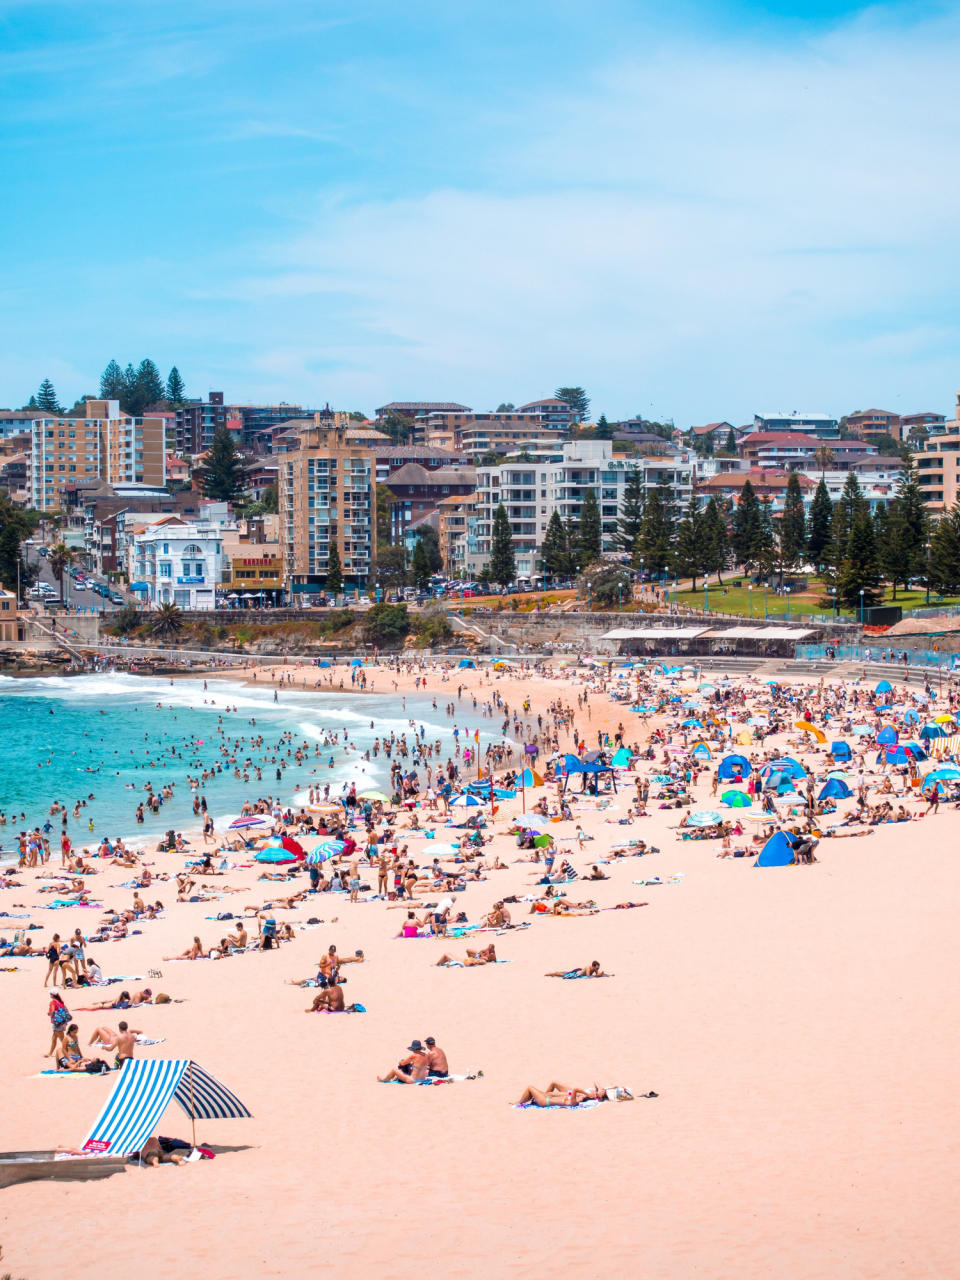 A busy Bondi beach in Sydney, Australia